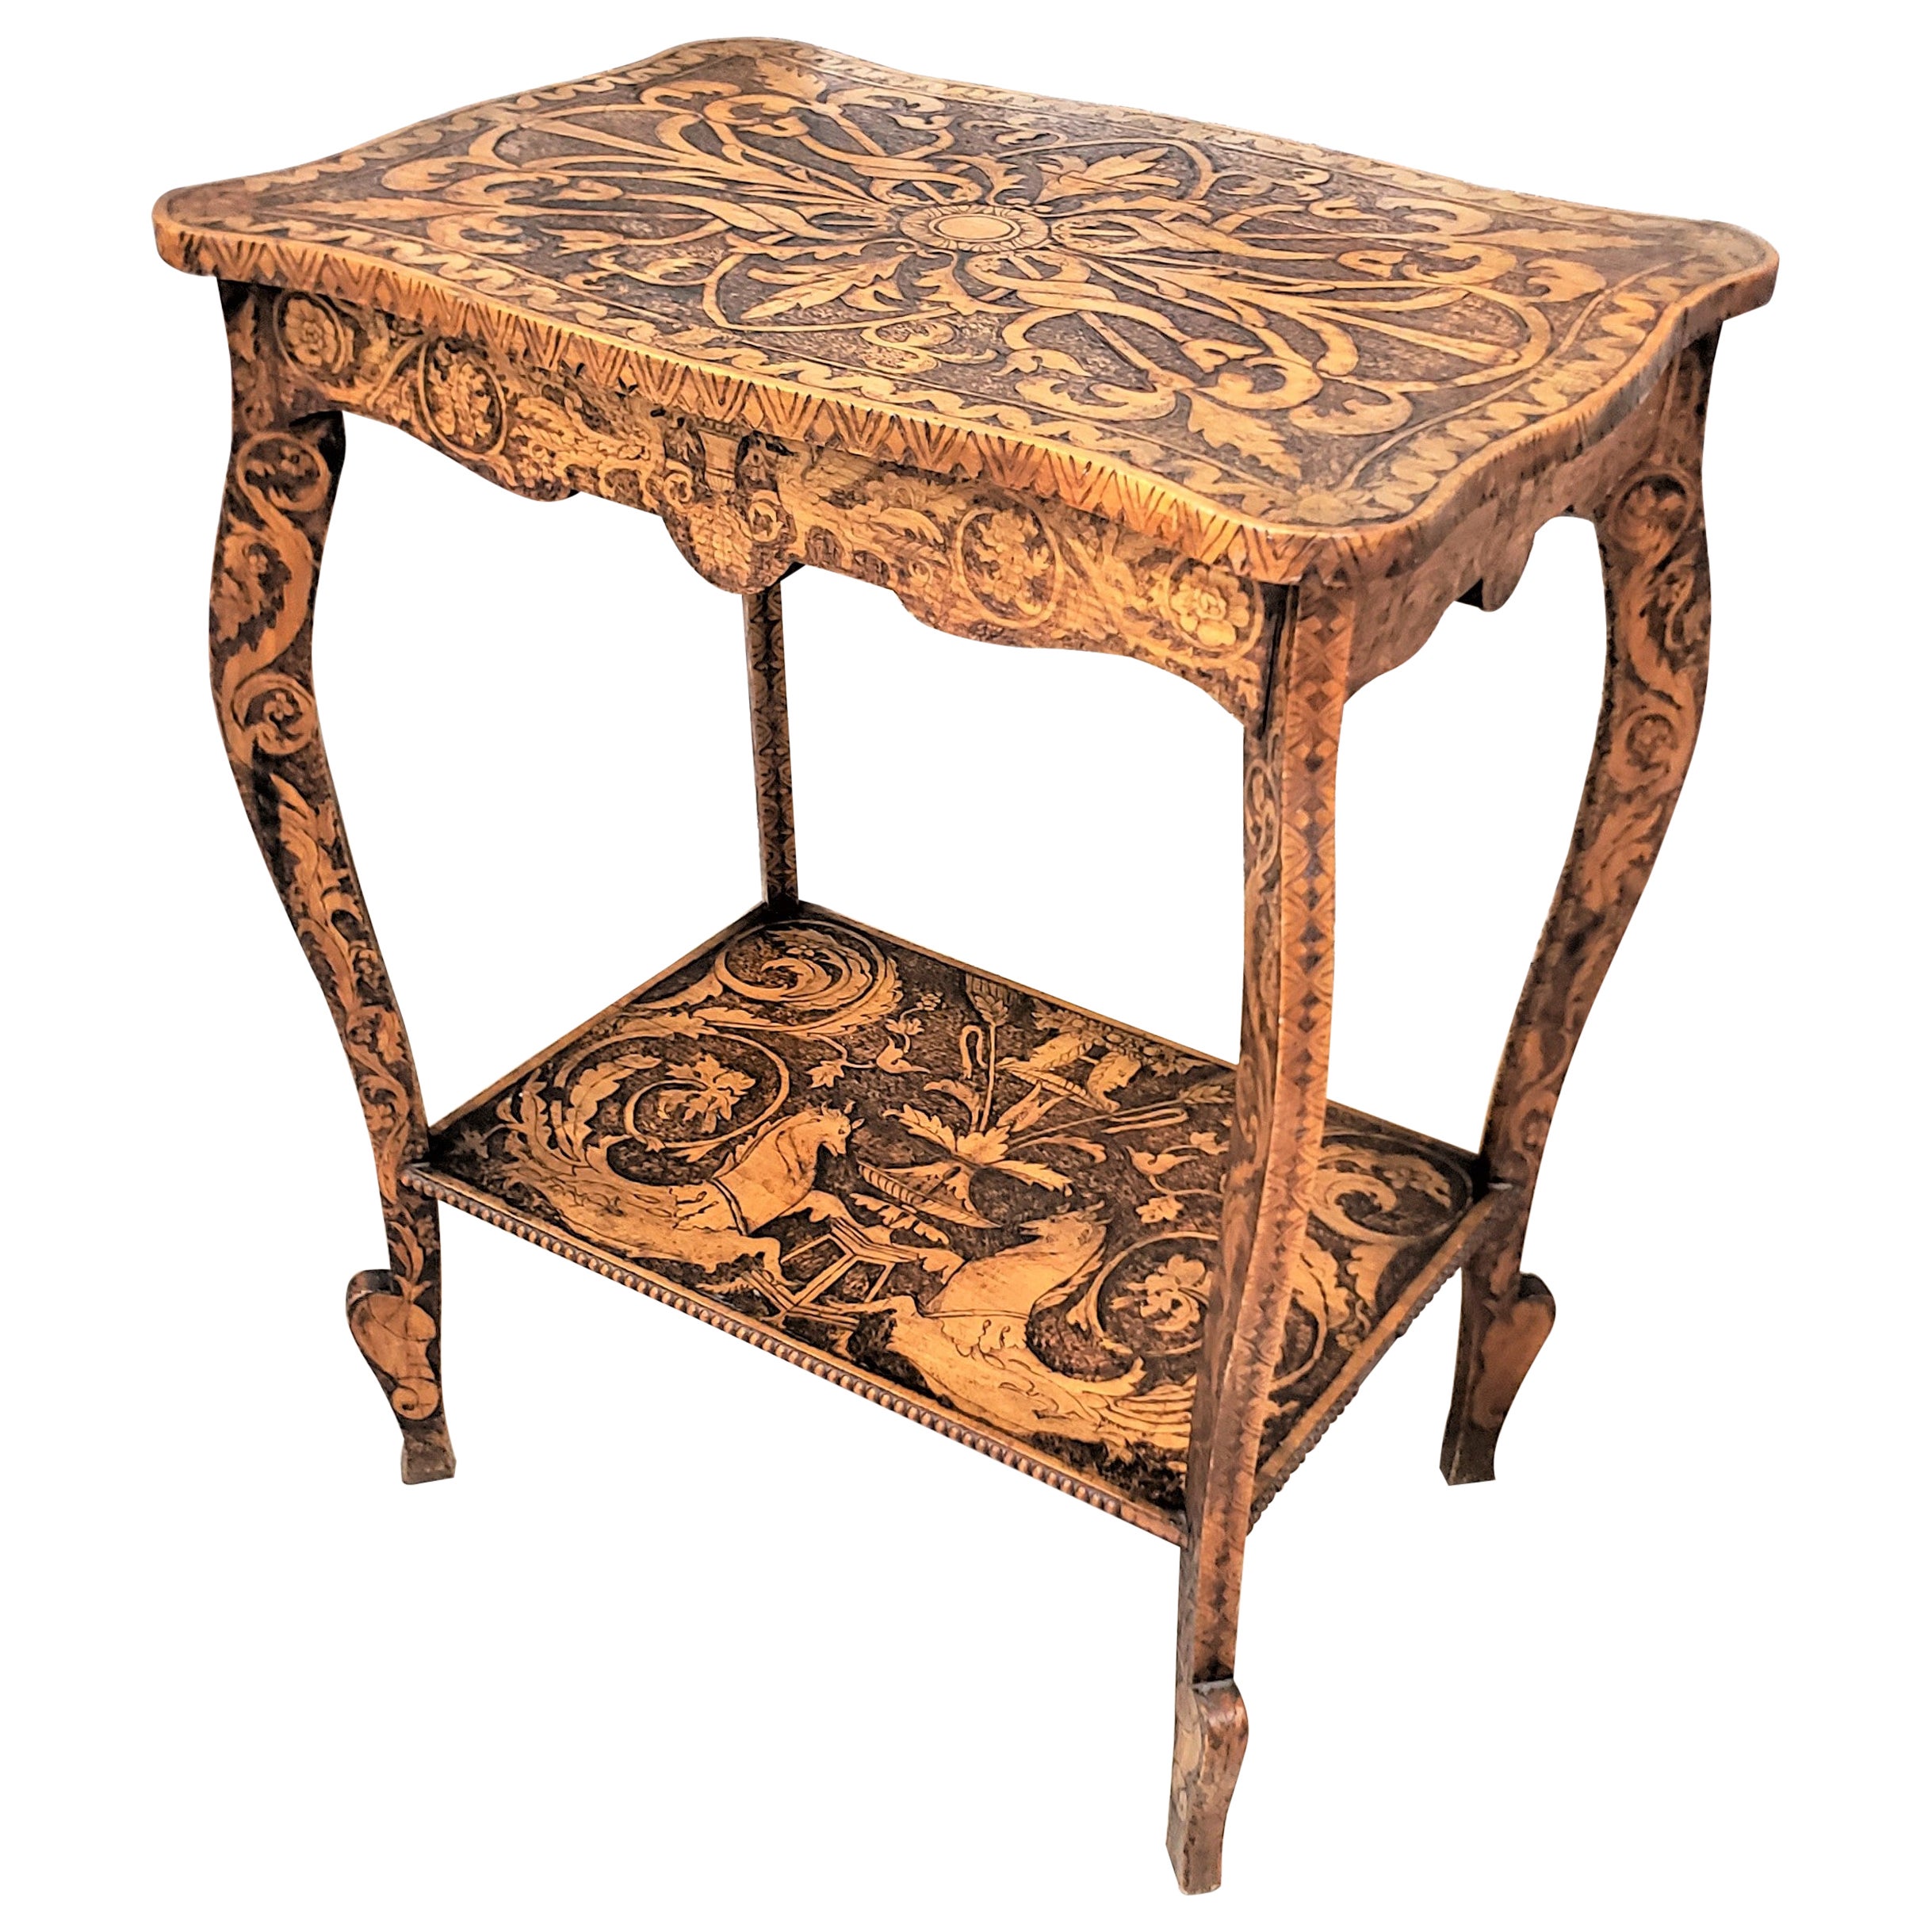 Table d'appoint Pyro à deux étages ornée d'artisanat ancien